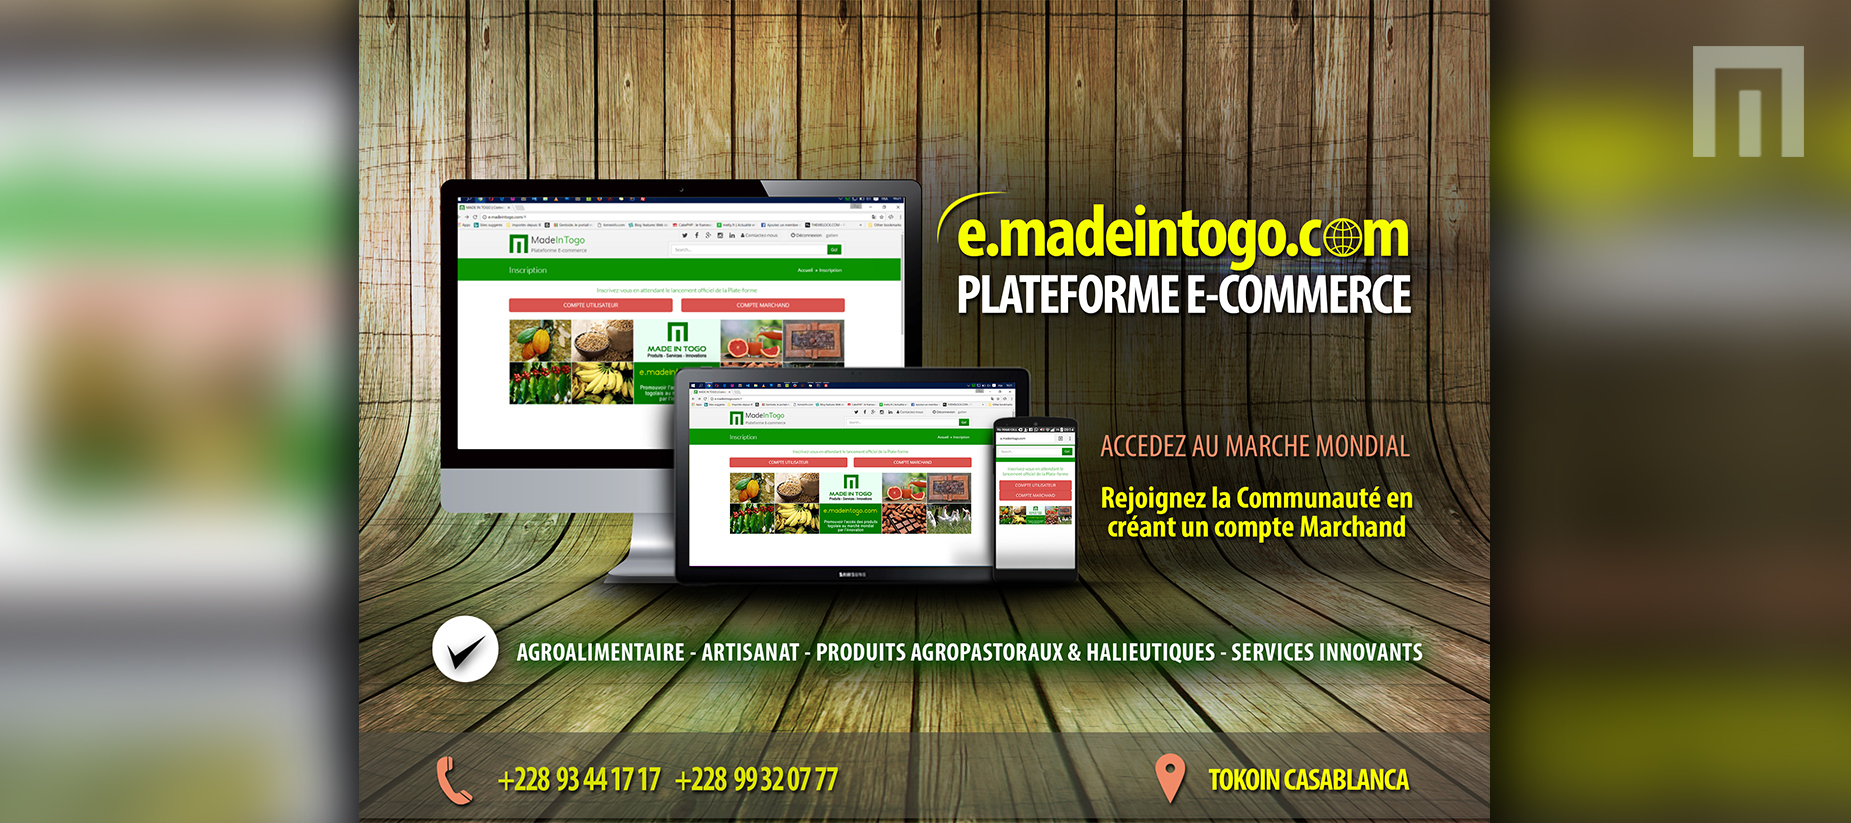 "e.madeintogo.com" La plateforme E-COMMERCE de la créativité togolaise